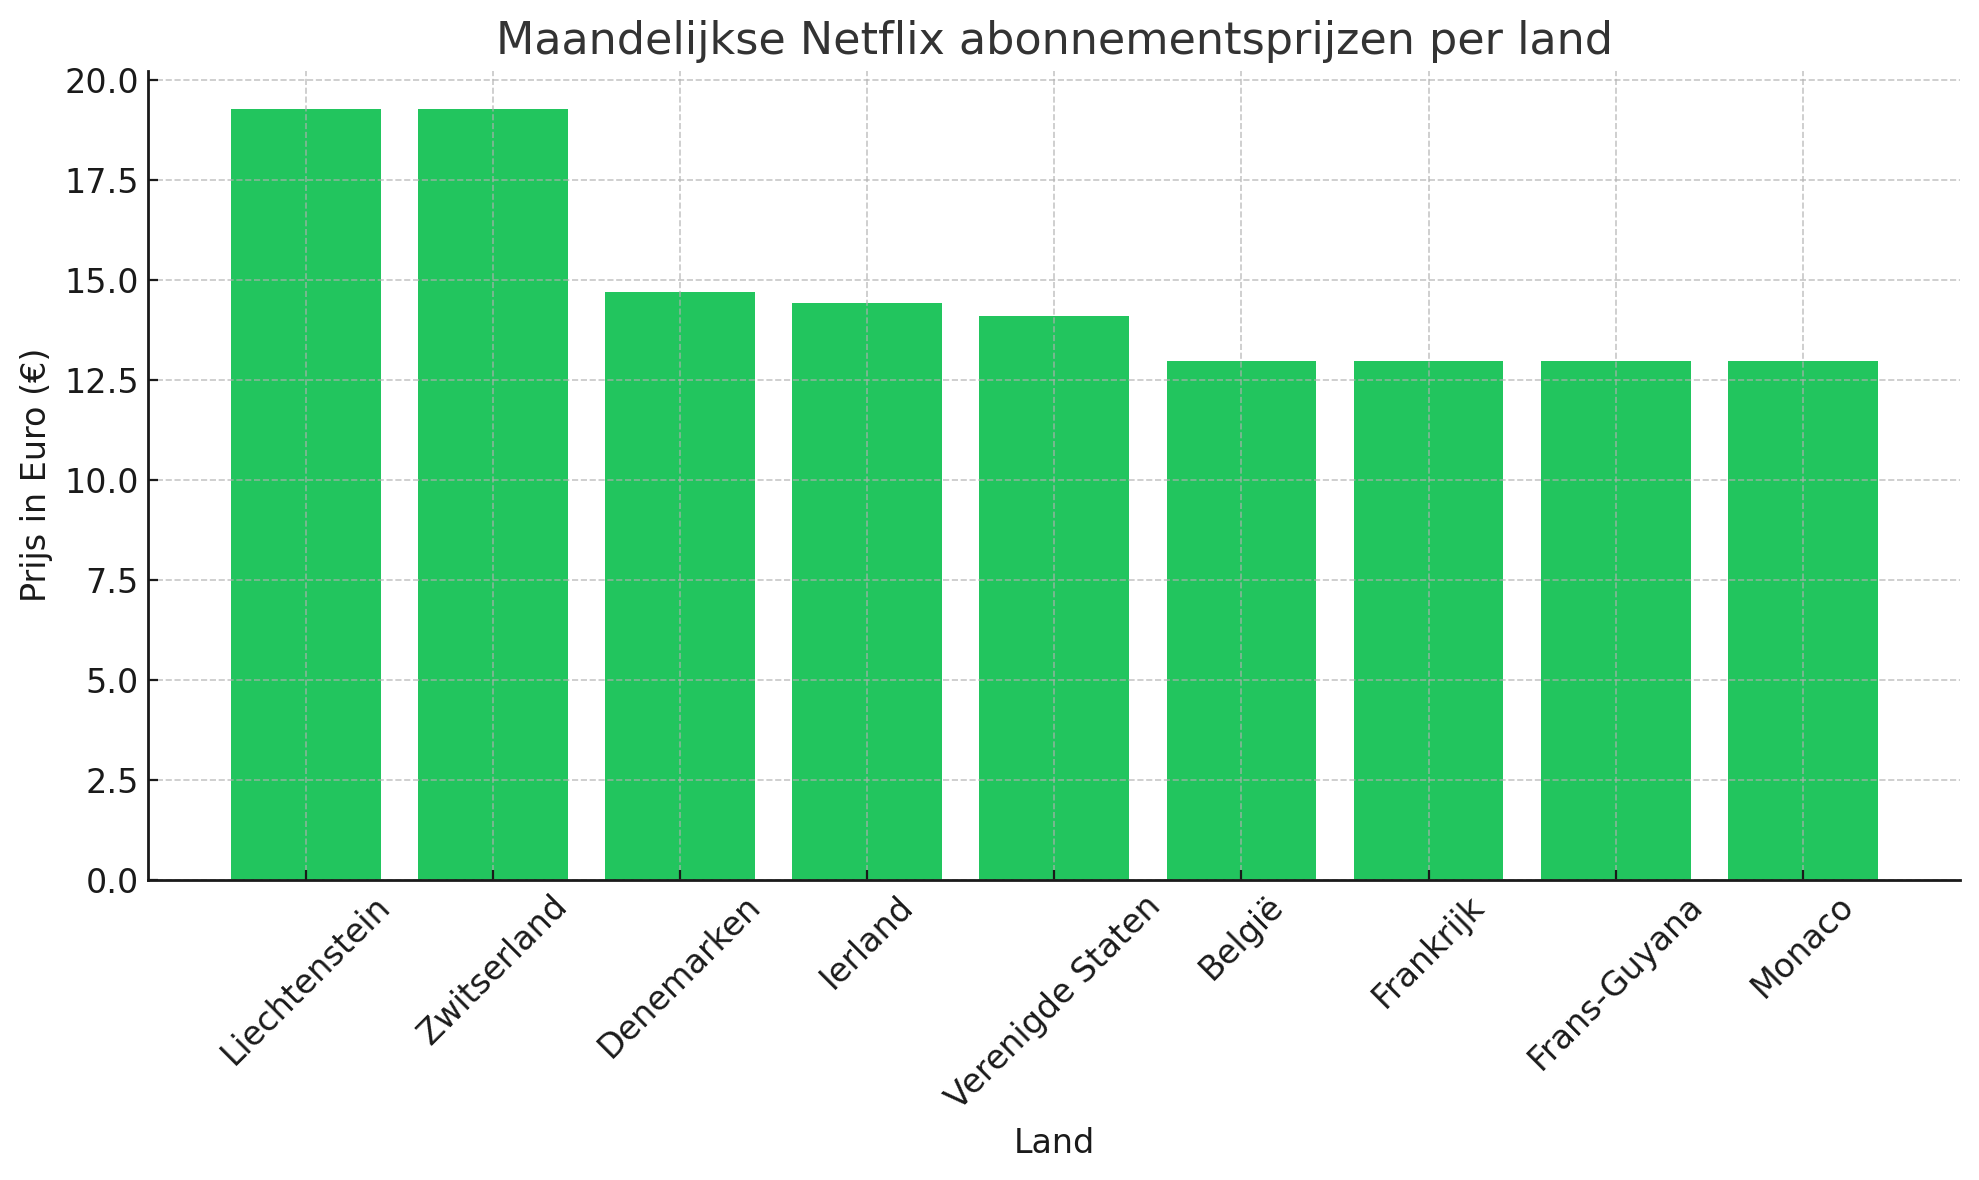 Maandelijkse Netflix abonnementsprijzen per land